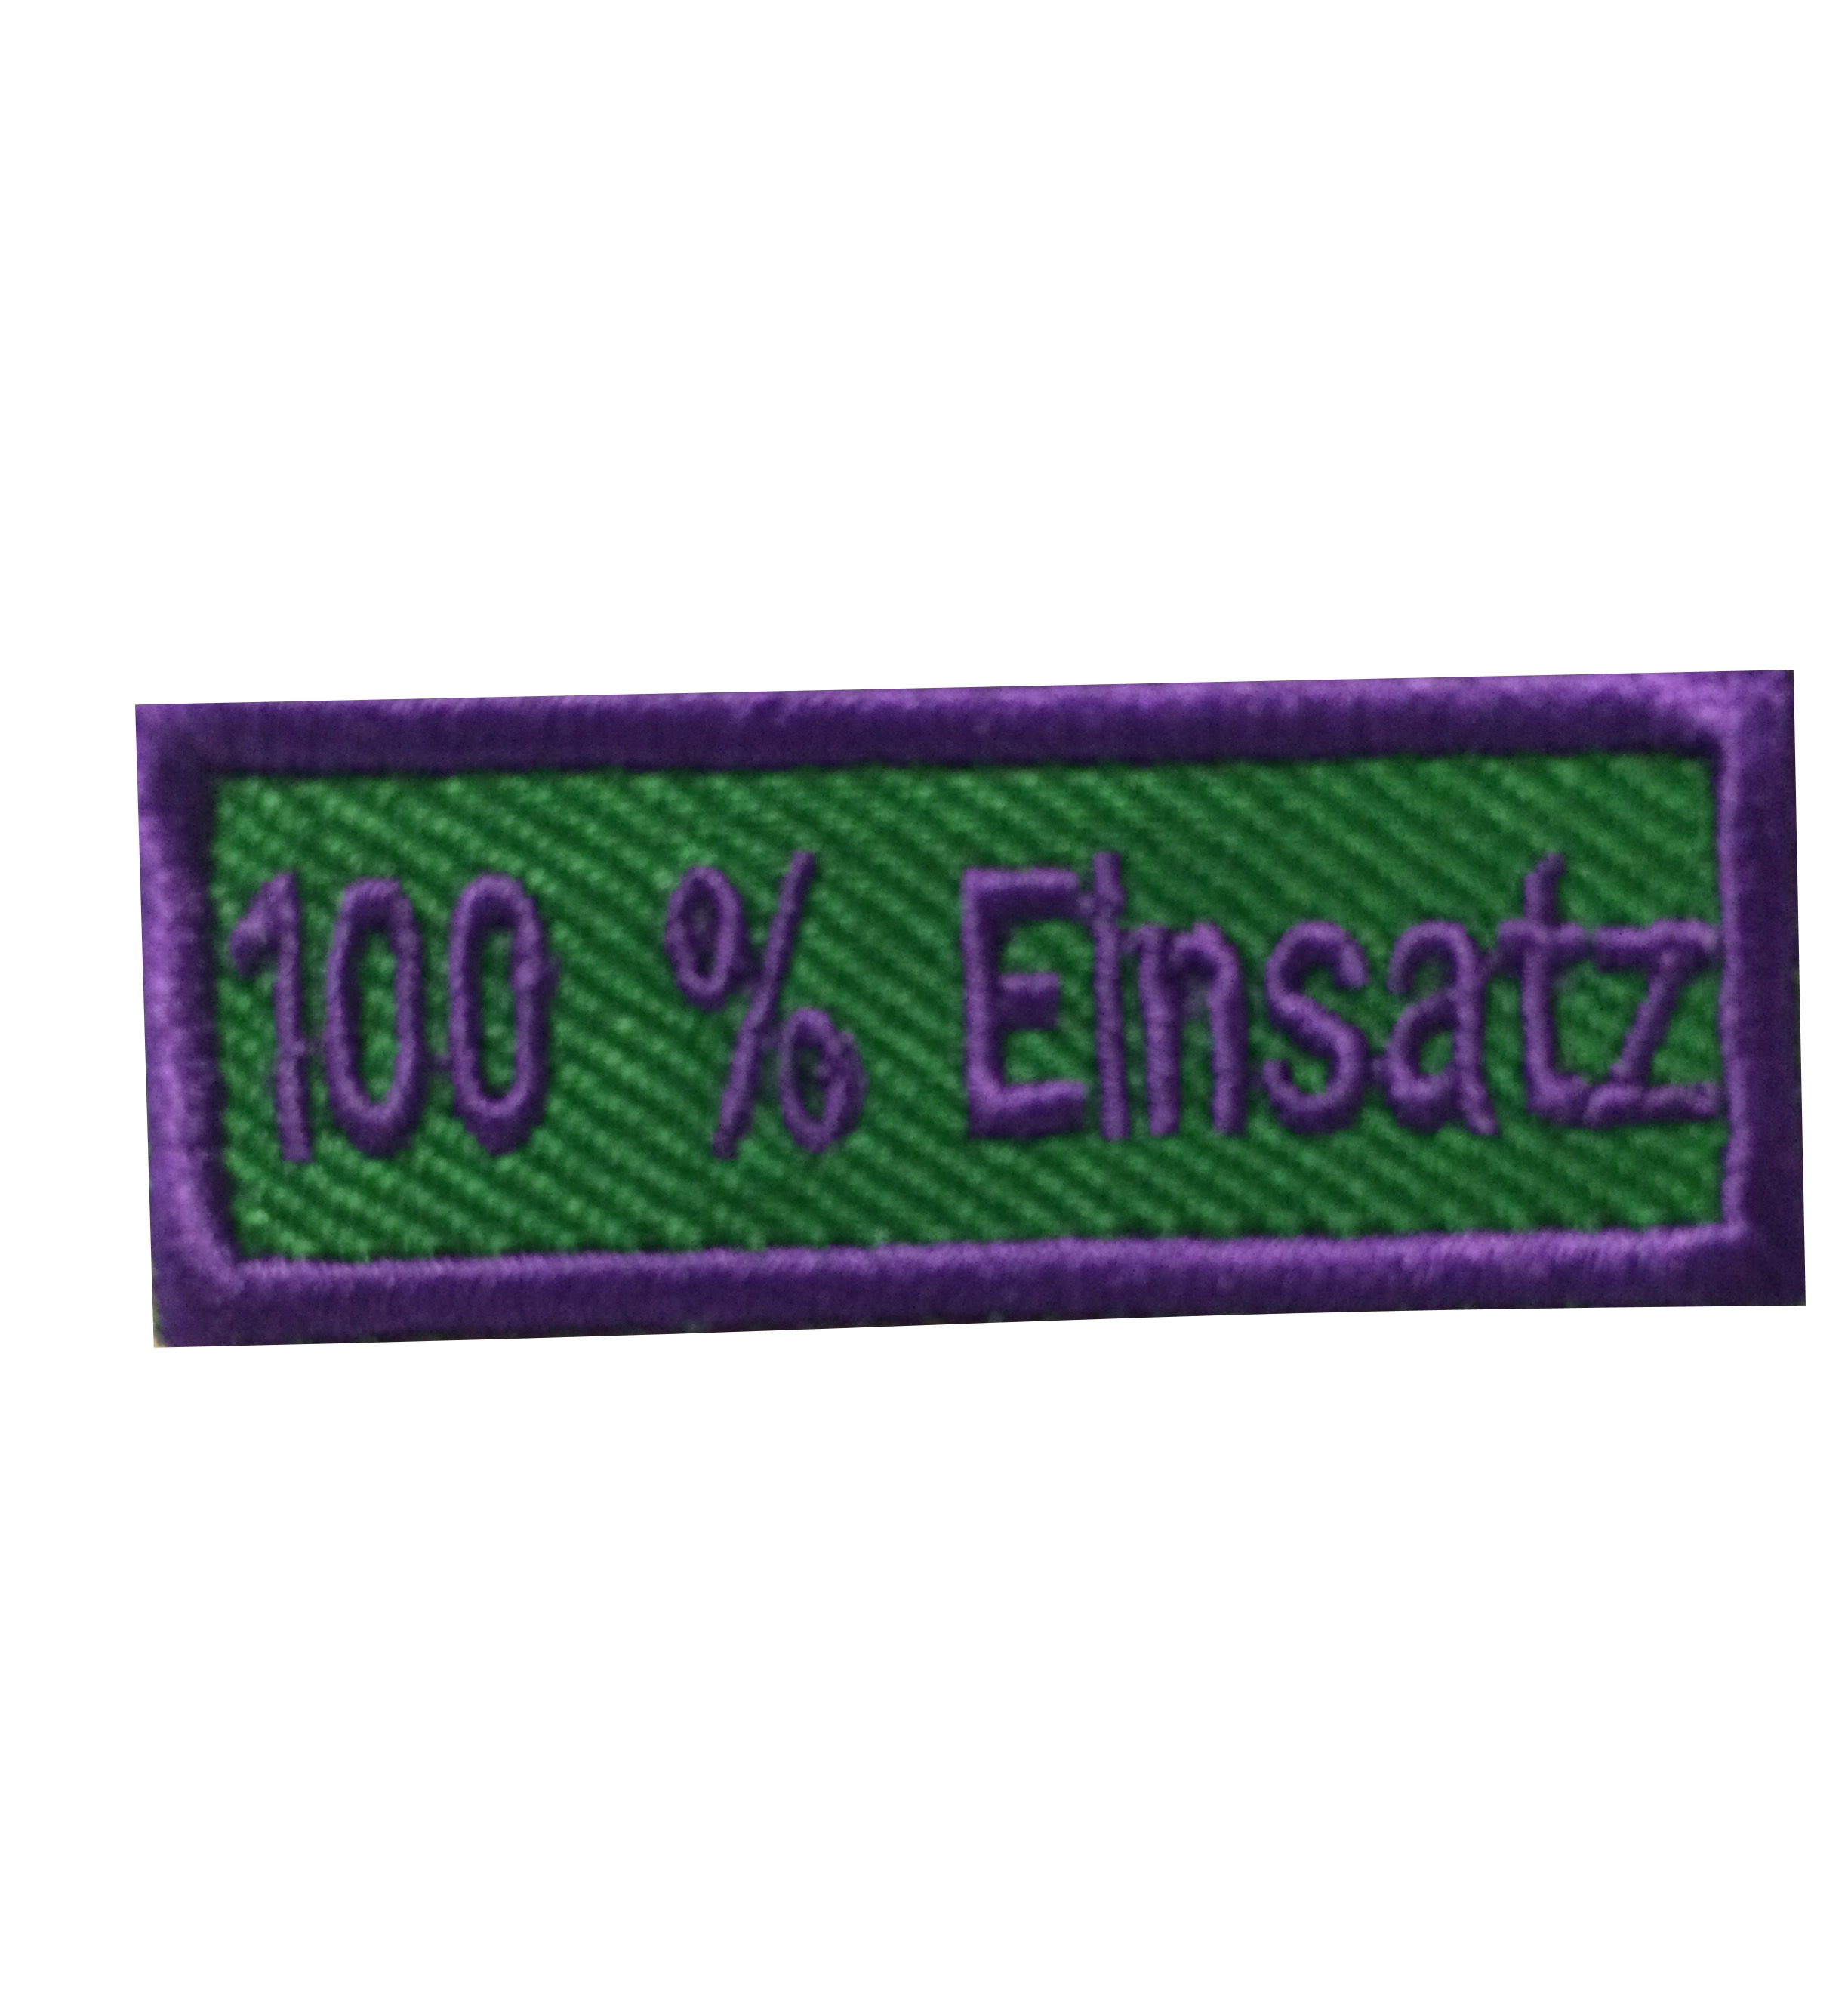 100 % Einsatz - Anerkennungs-Abzeichen / Skill Patch violett/ grün